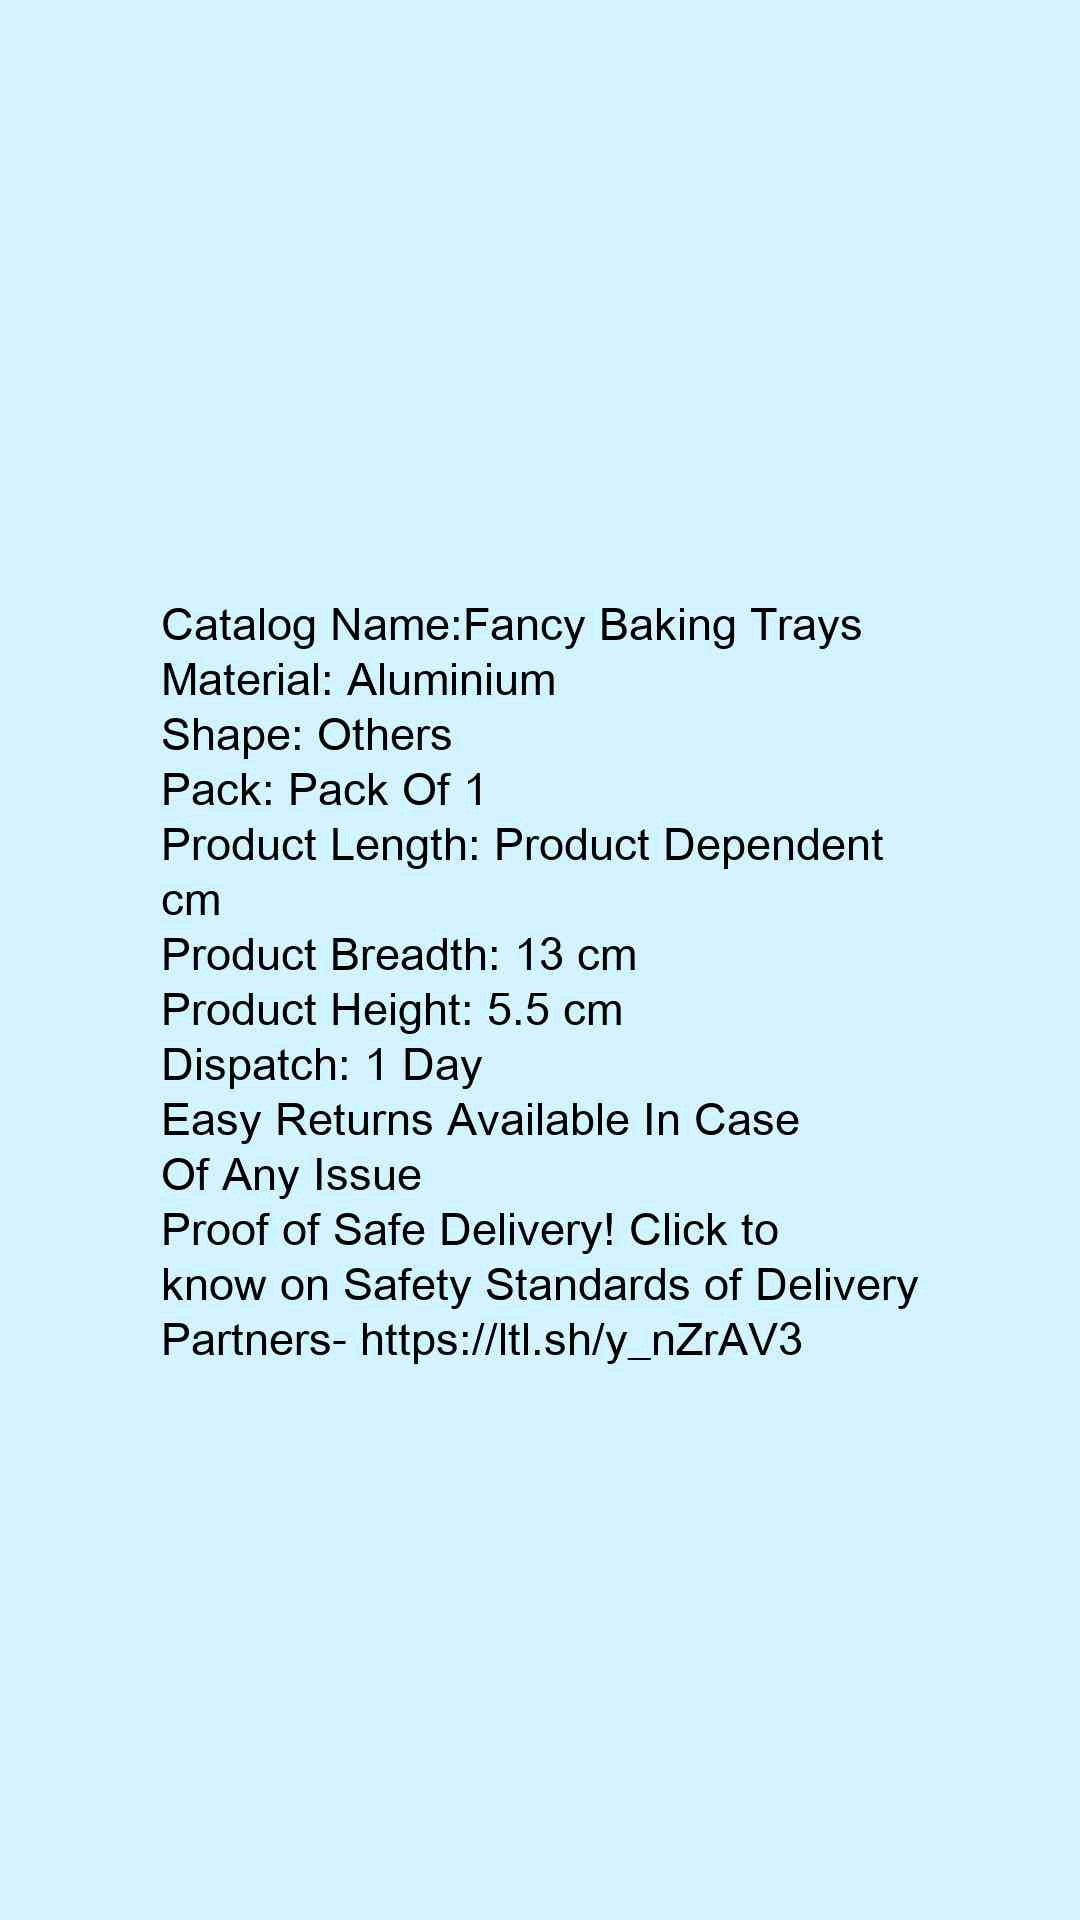 Fancy Baking Trays - Faritha